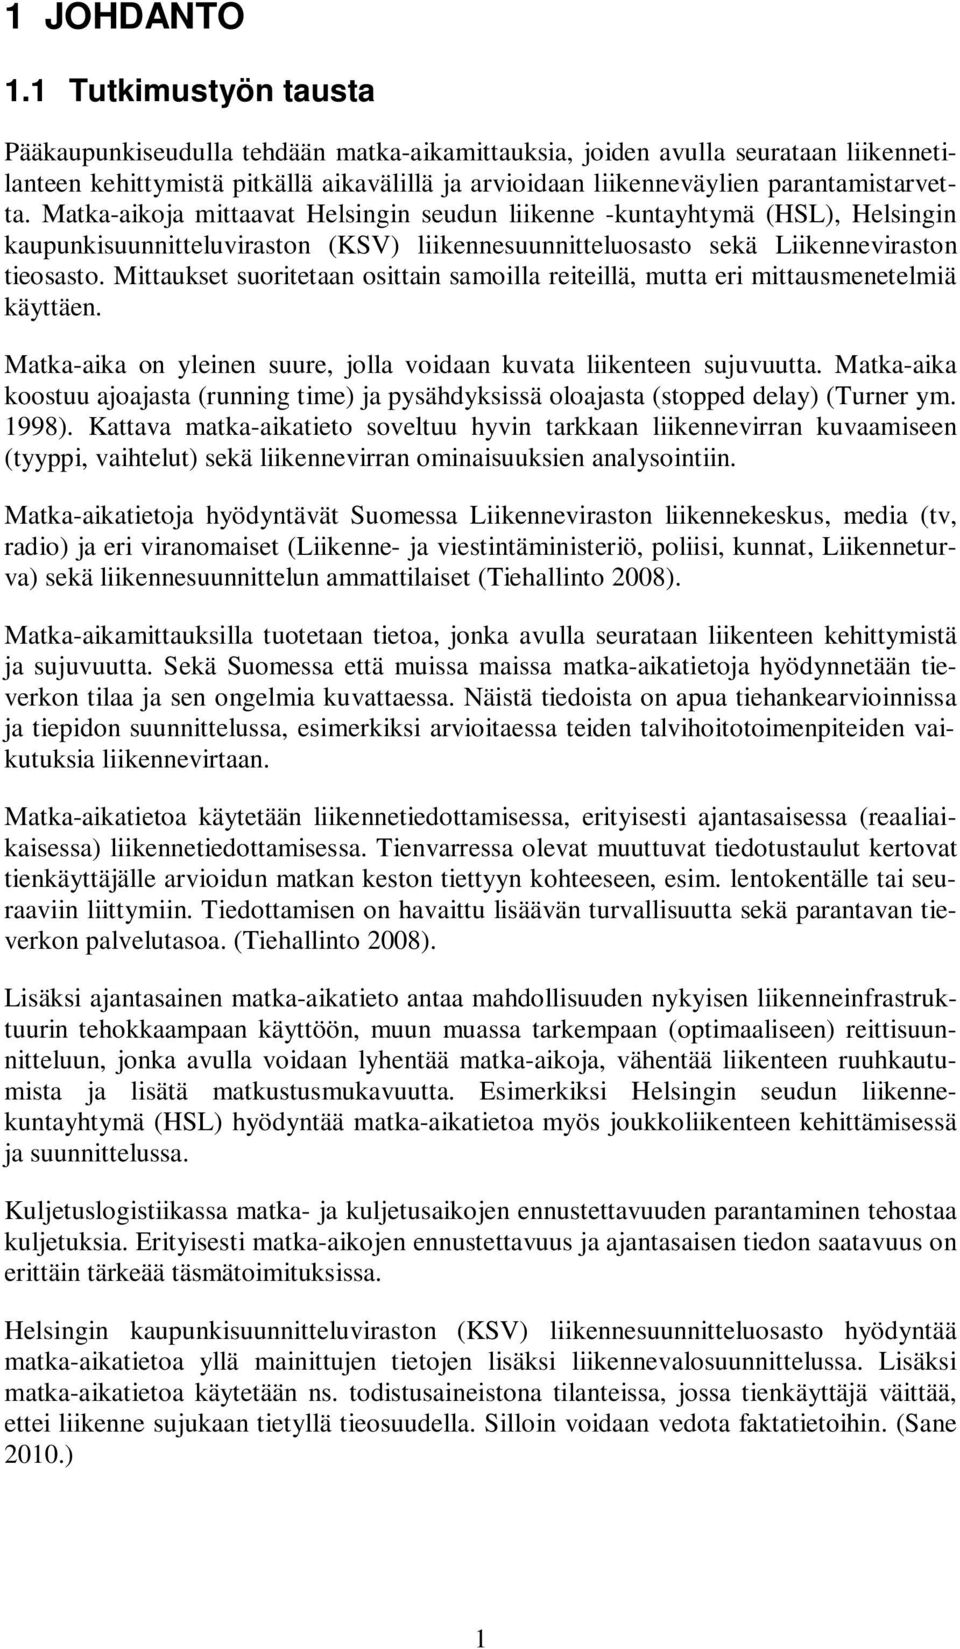 Matka-aikoja mittaavat Helsingin seudun liikenne -kuntayhtymä (HSL), Helsingin kaupunkisuunnitteluviraston (KSV) liikennesuunnitteluosasto sekä Liikenneviraston tieosasto.